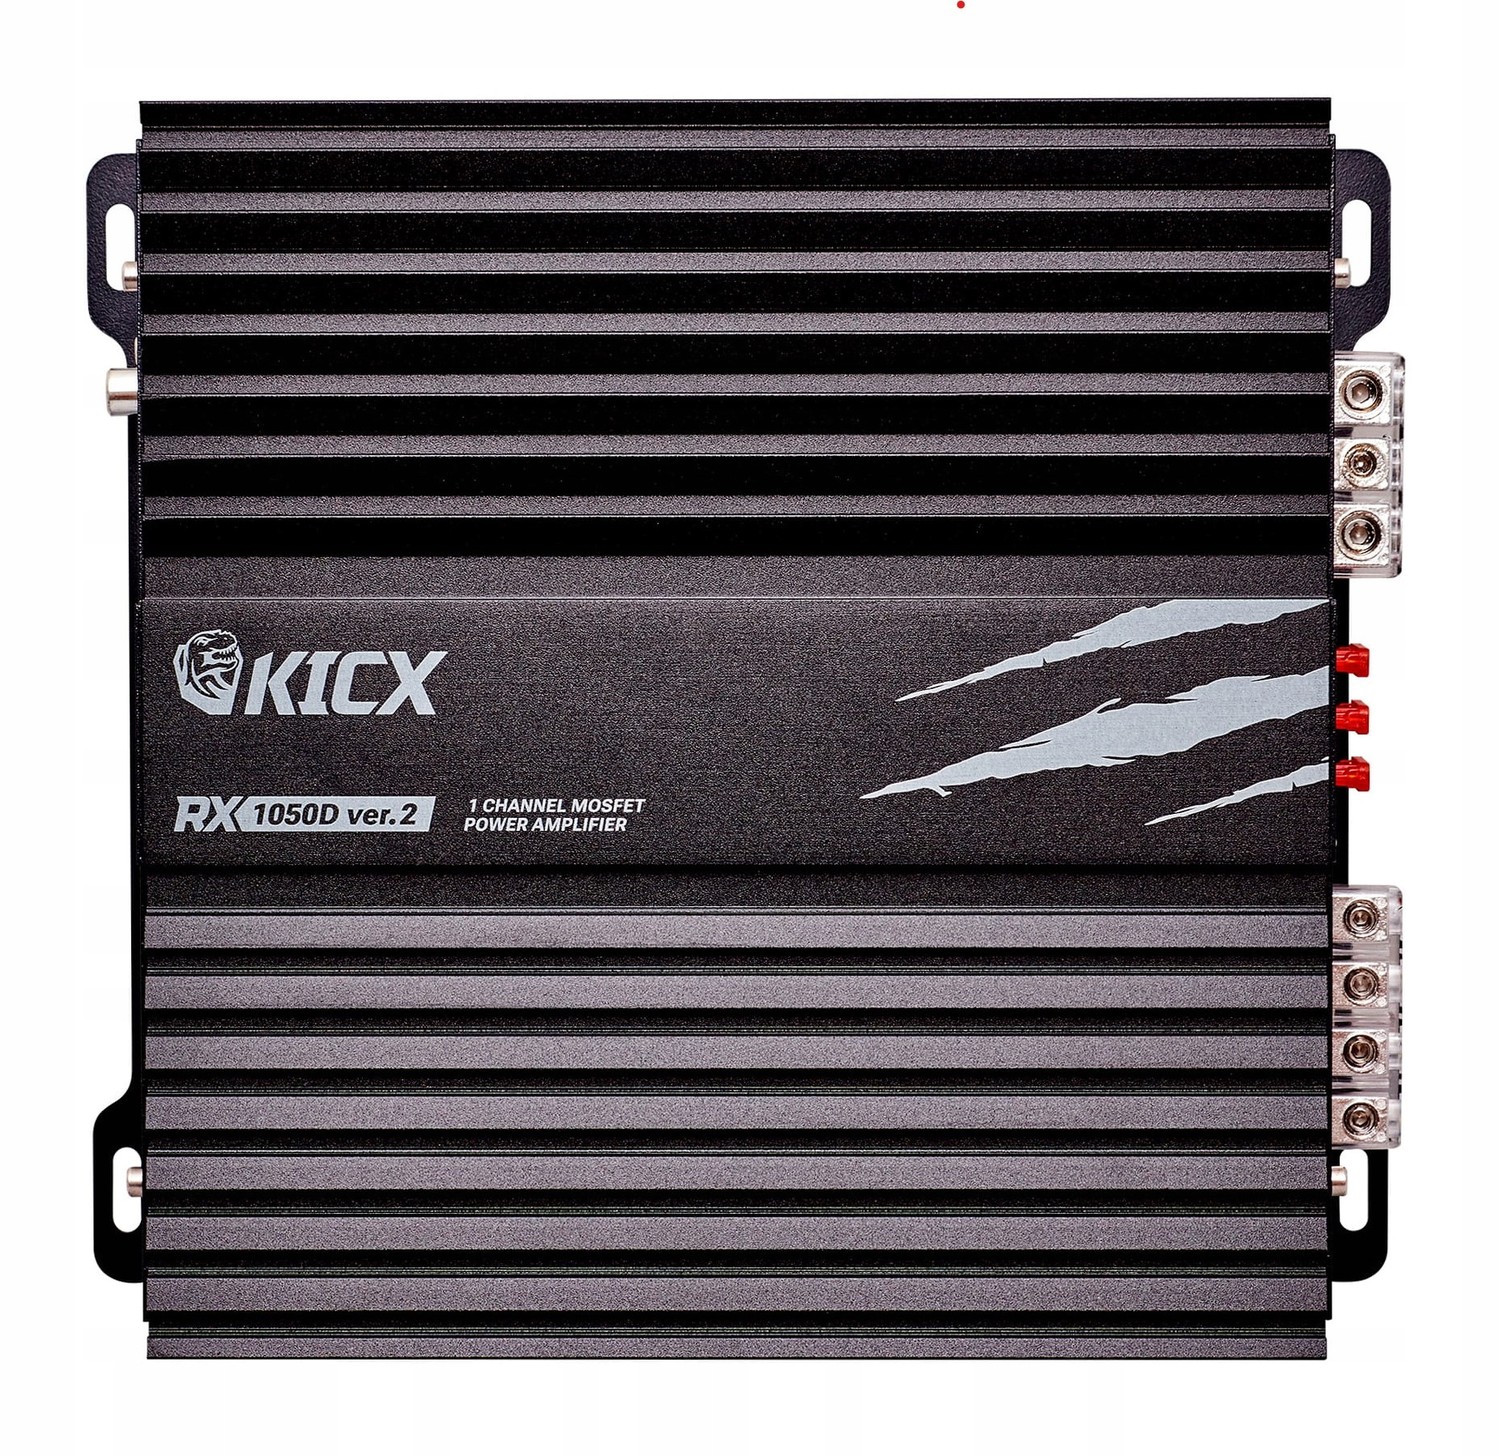 Kicx Rx 1050D ver.2 Zesilovač 1kanálový 540/810/1050RMS